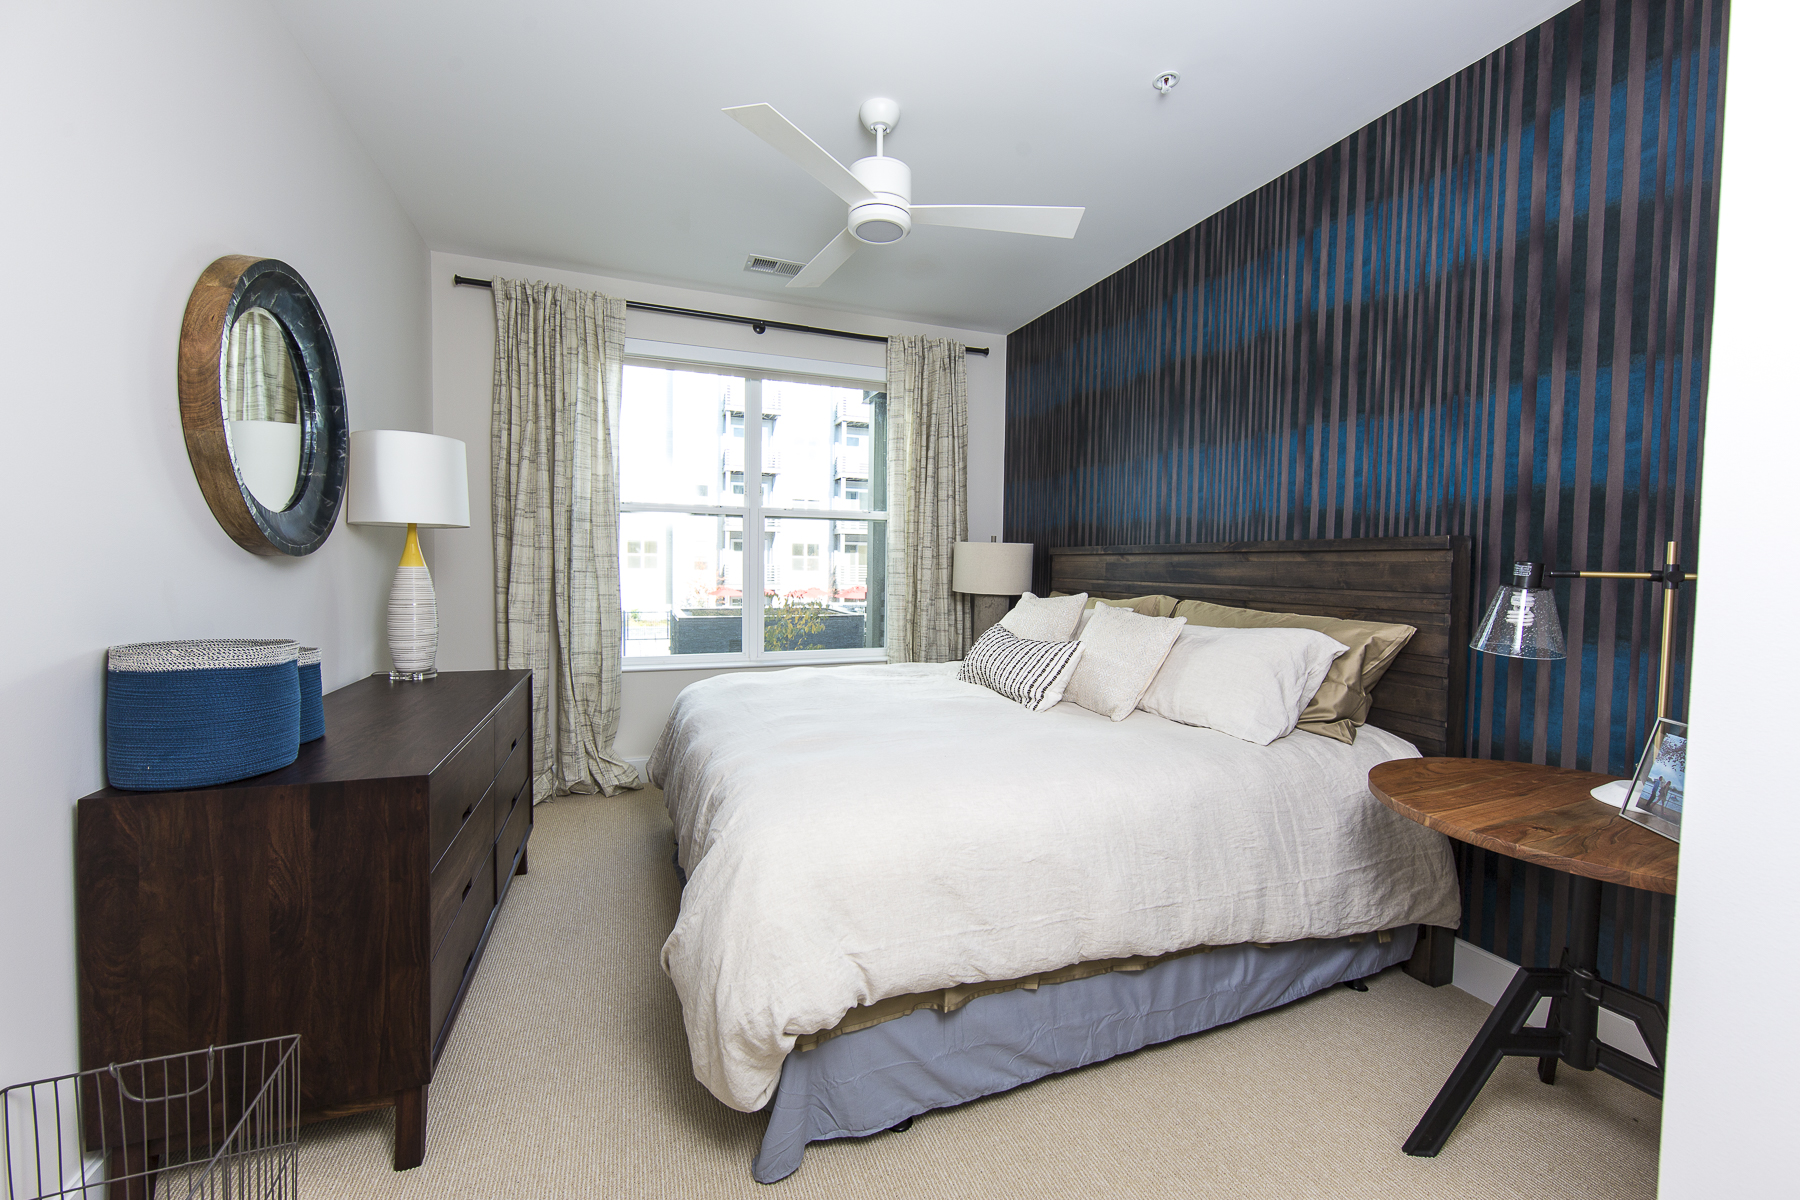 Ceiling fan in bedrooms